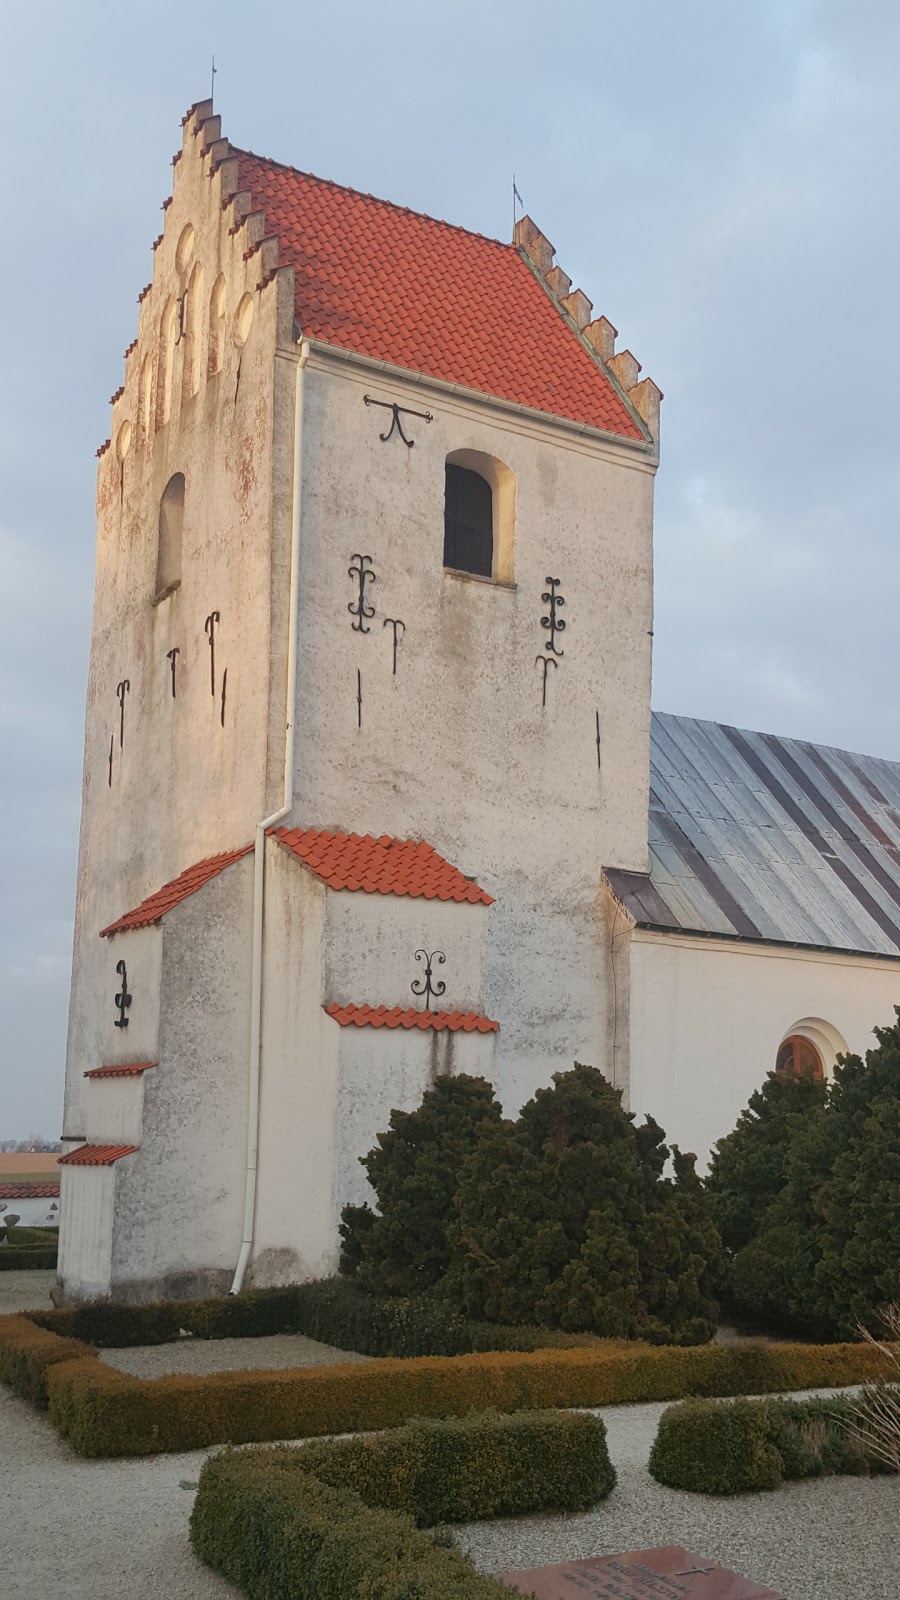 Håslövs kyrka